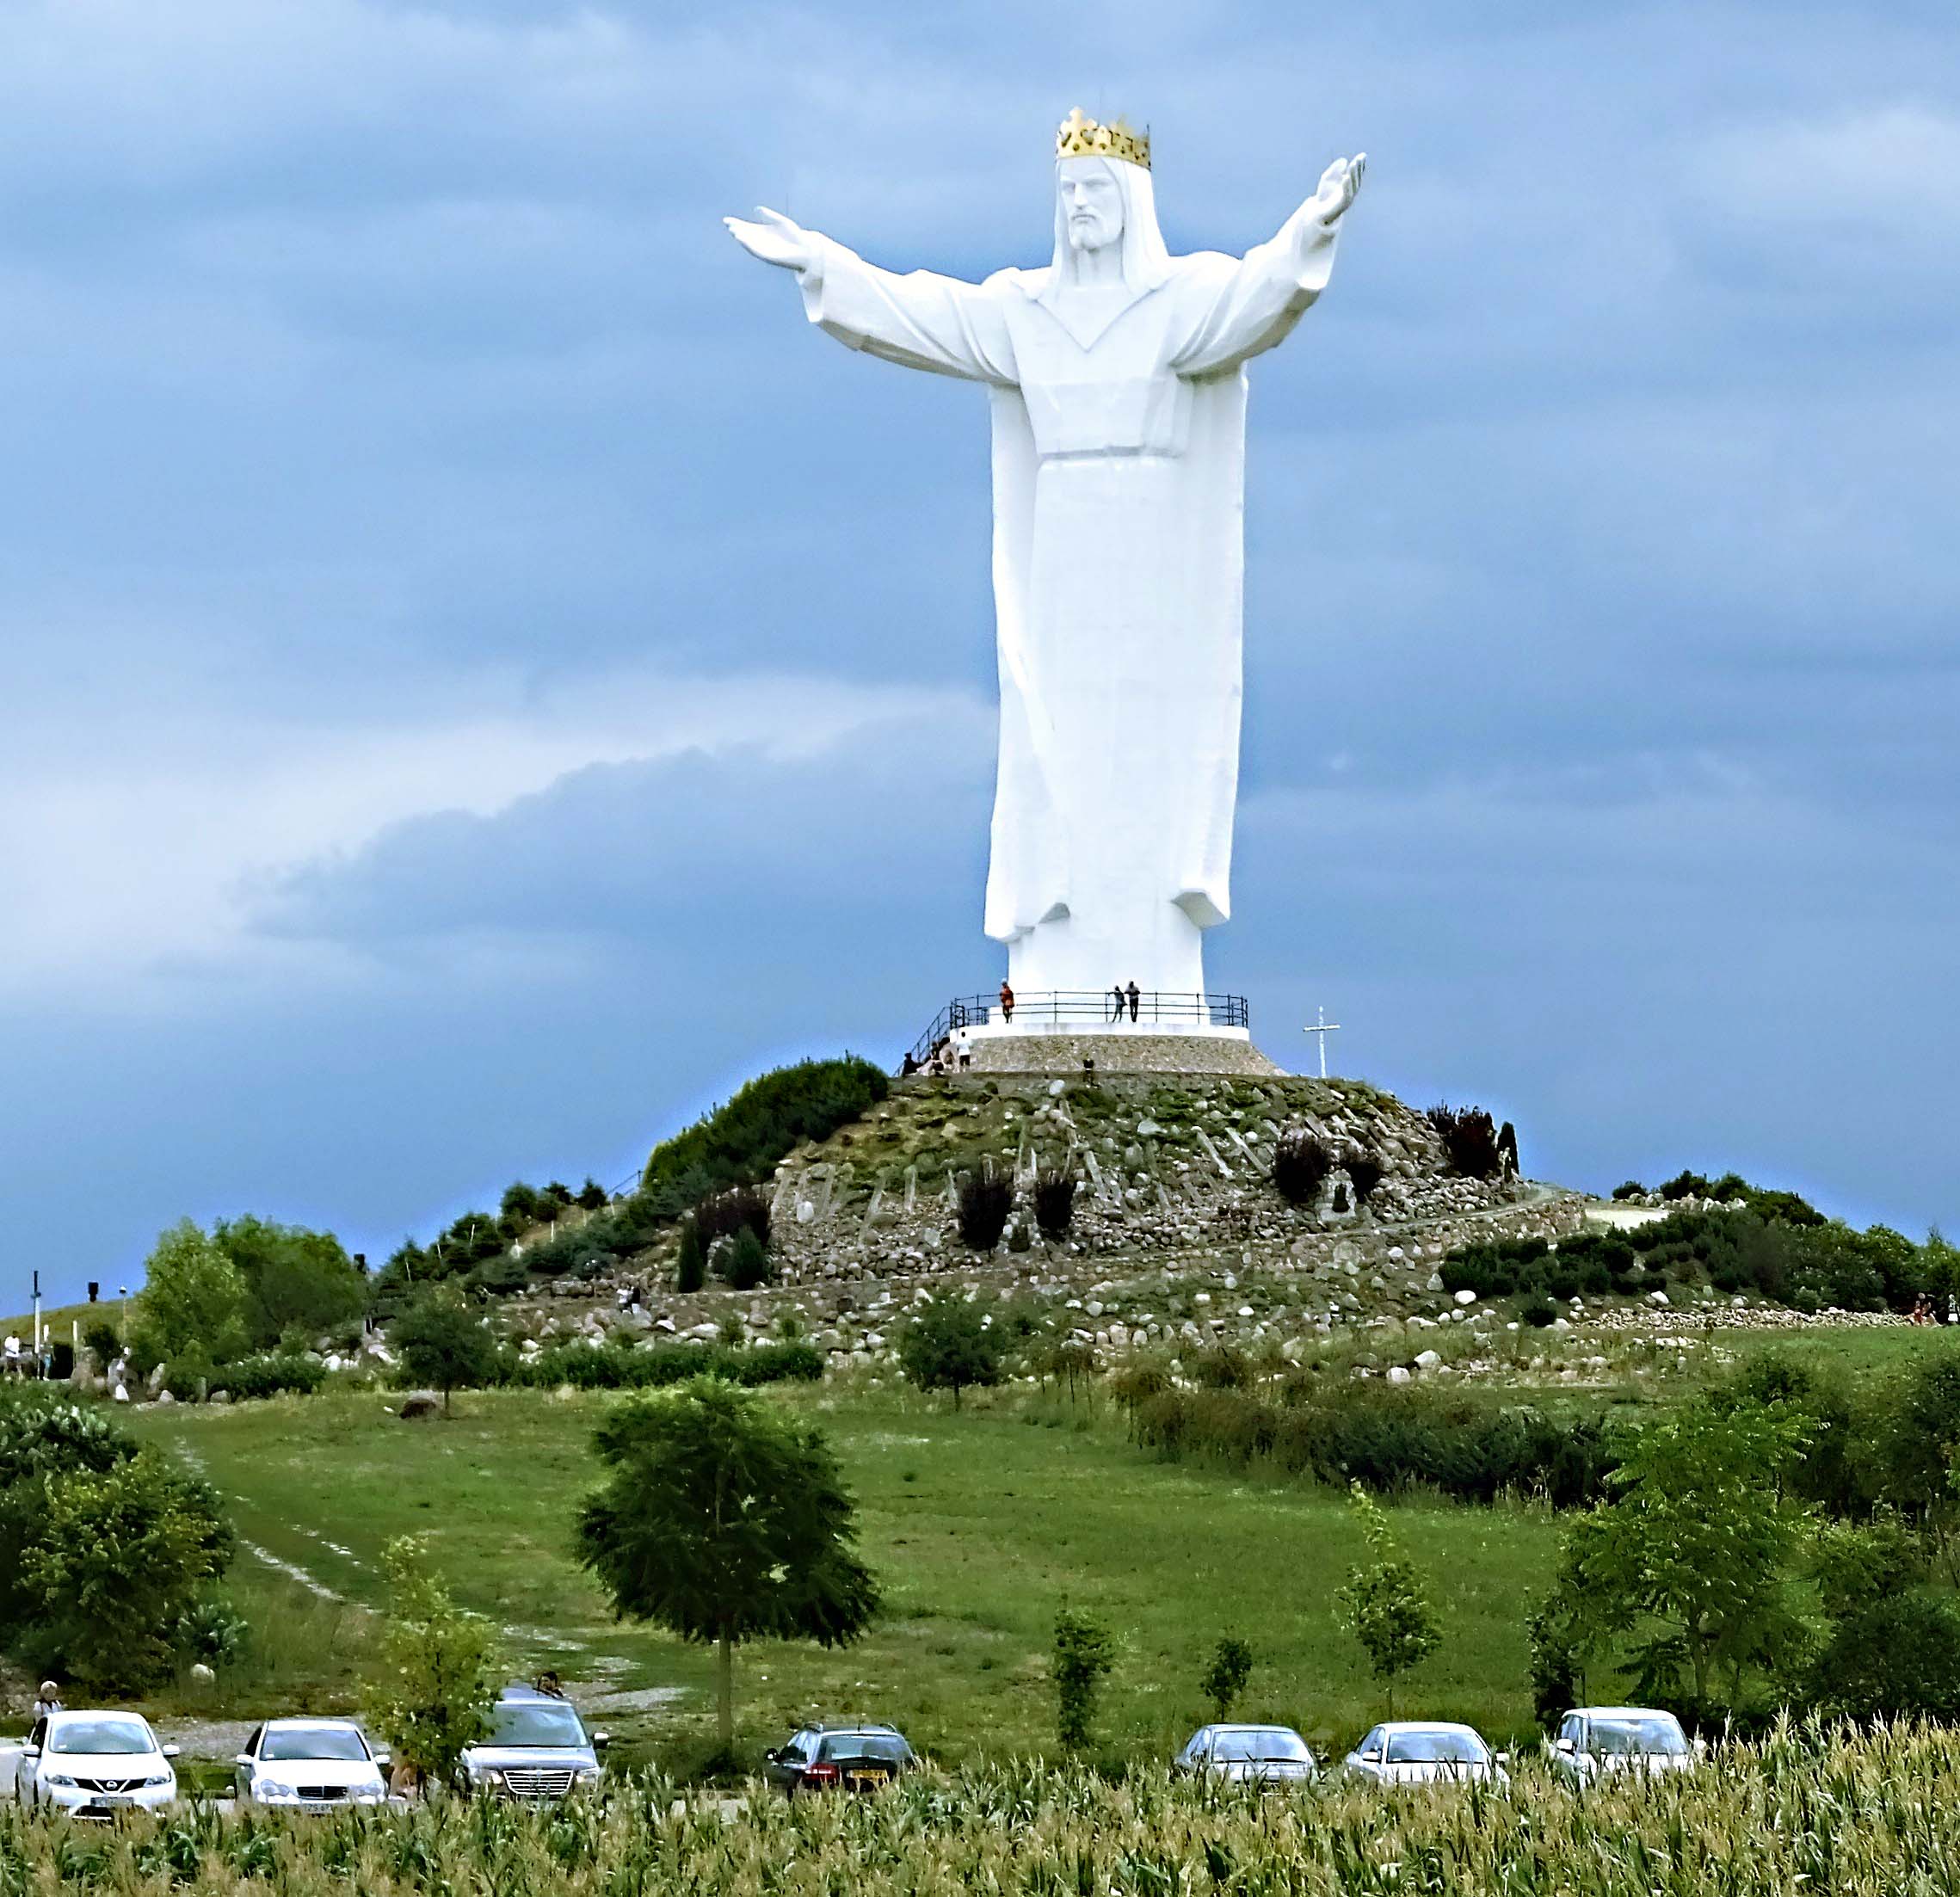 Beim Abschiedsblick über den Parkplatz wird durch den Größenvergleich das Gigantische der Christus-Statue noch einmal so richtig deutlich.